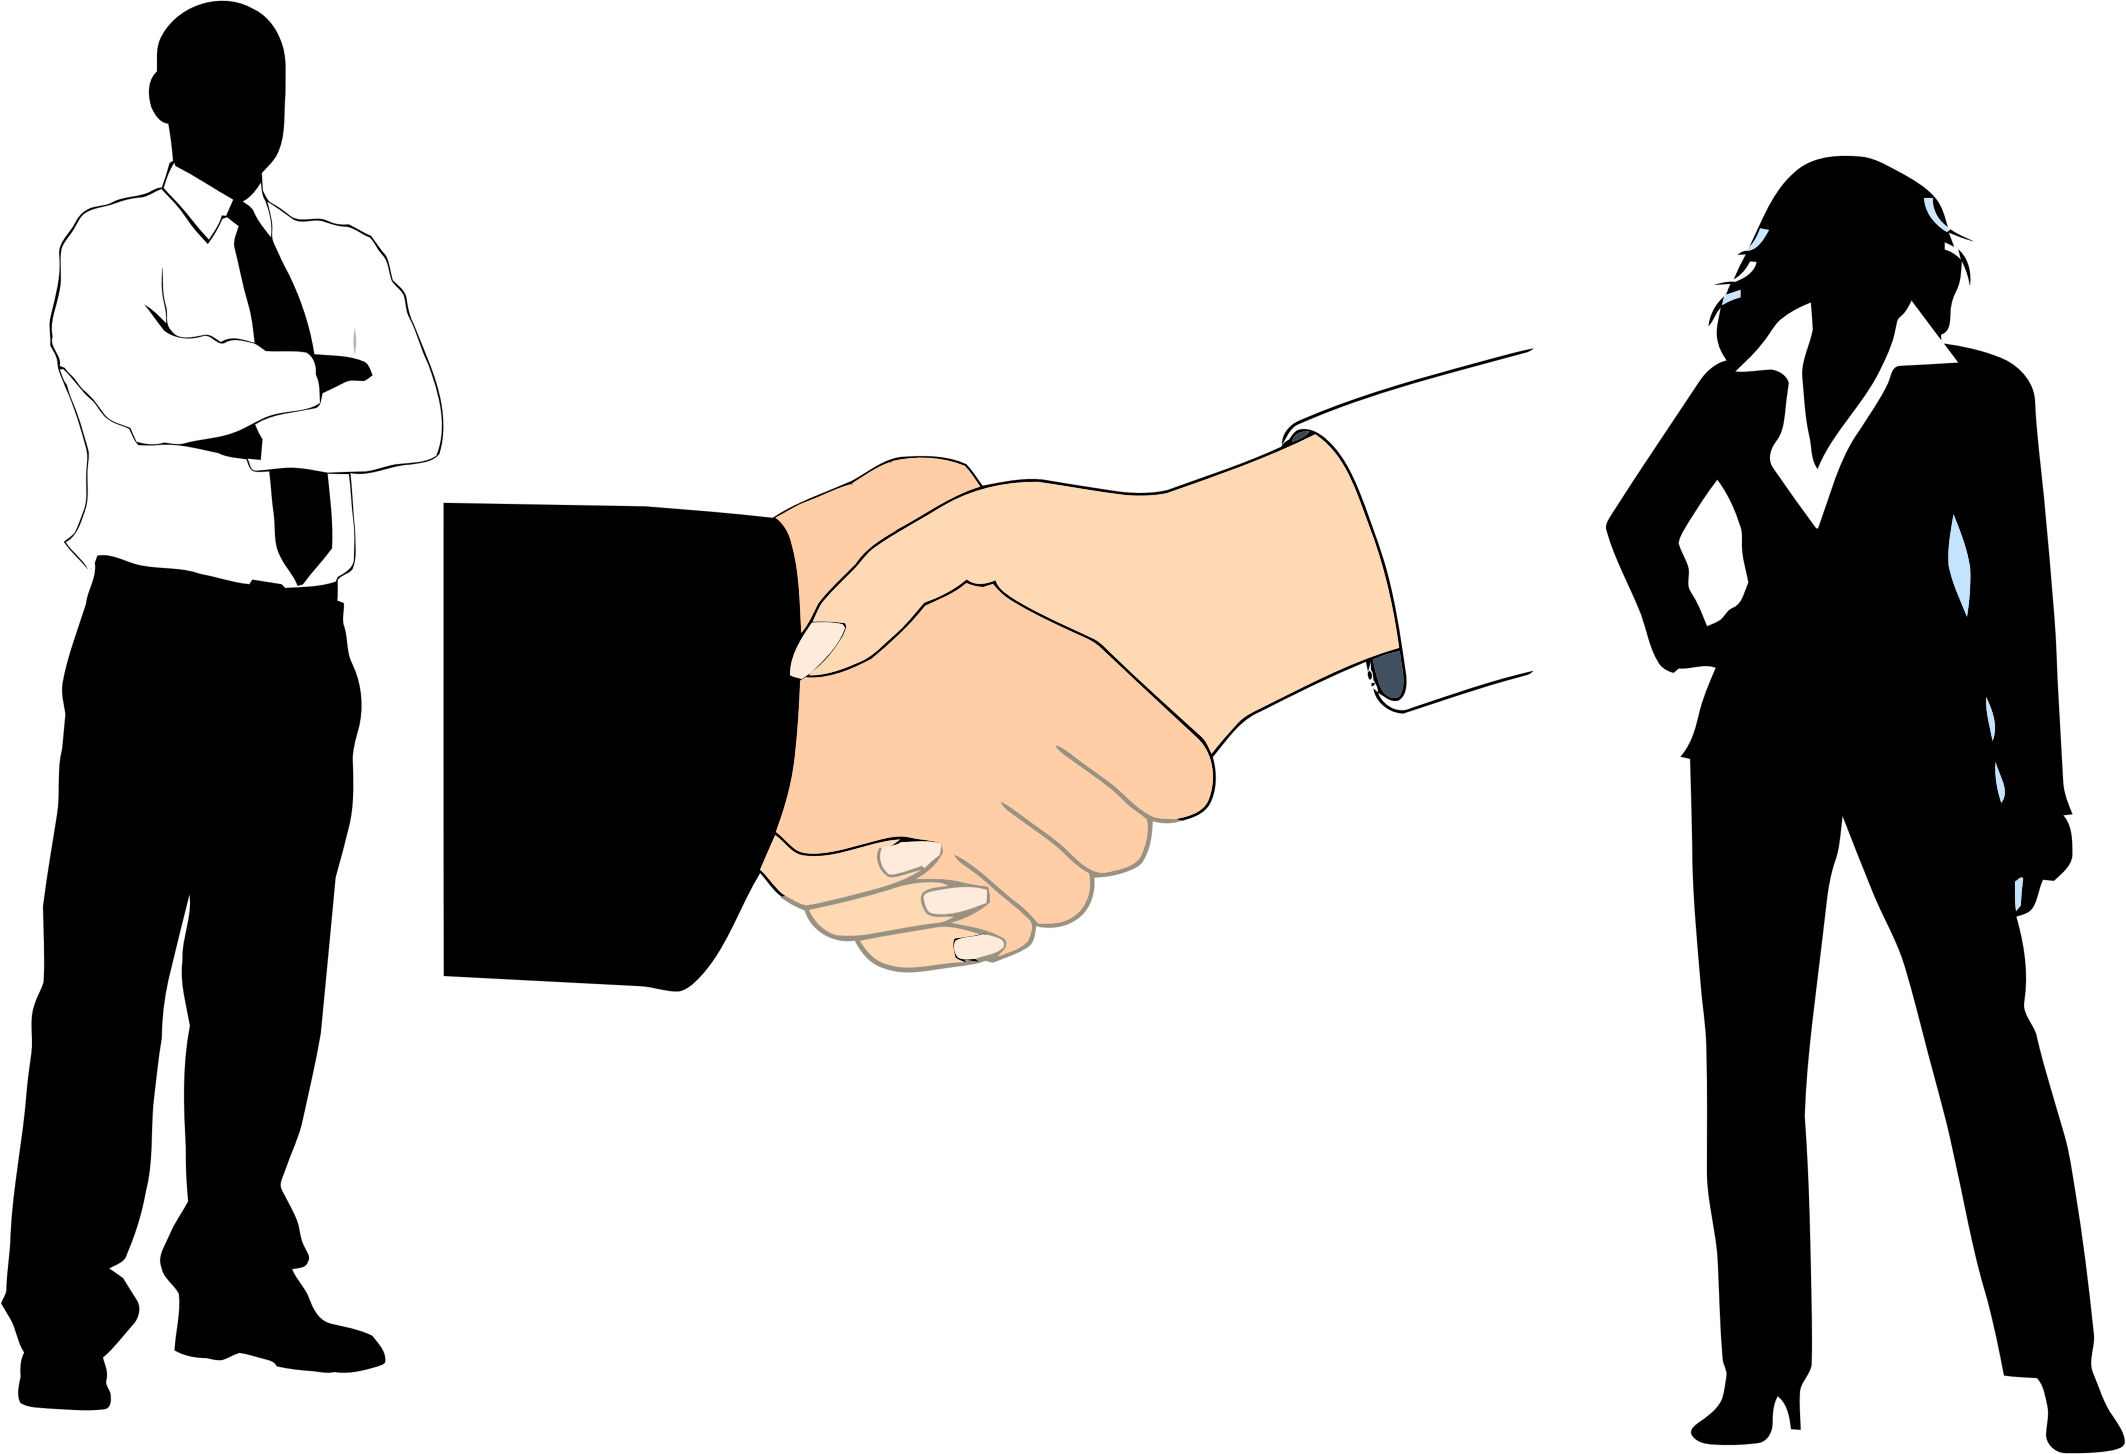 free business handshake clipart - photo #39